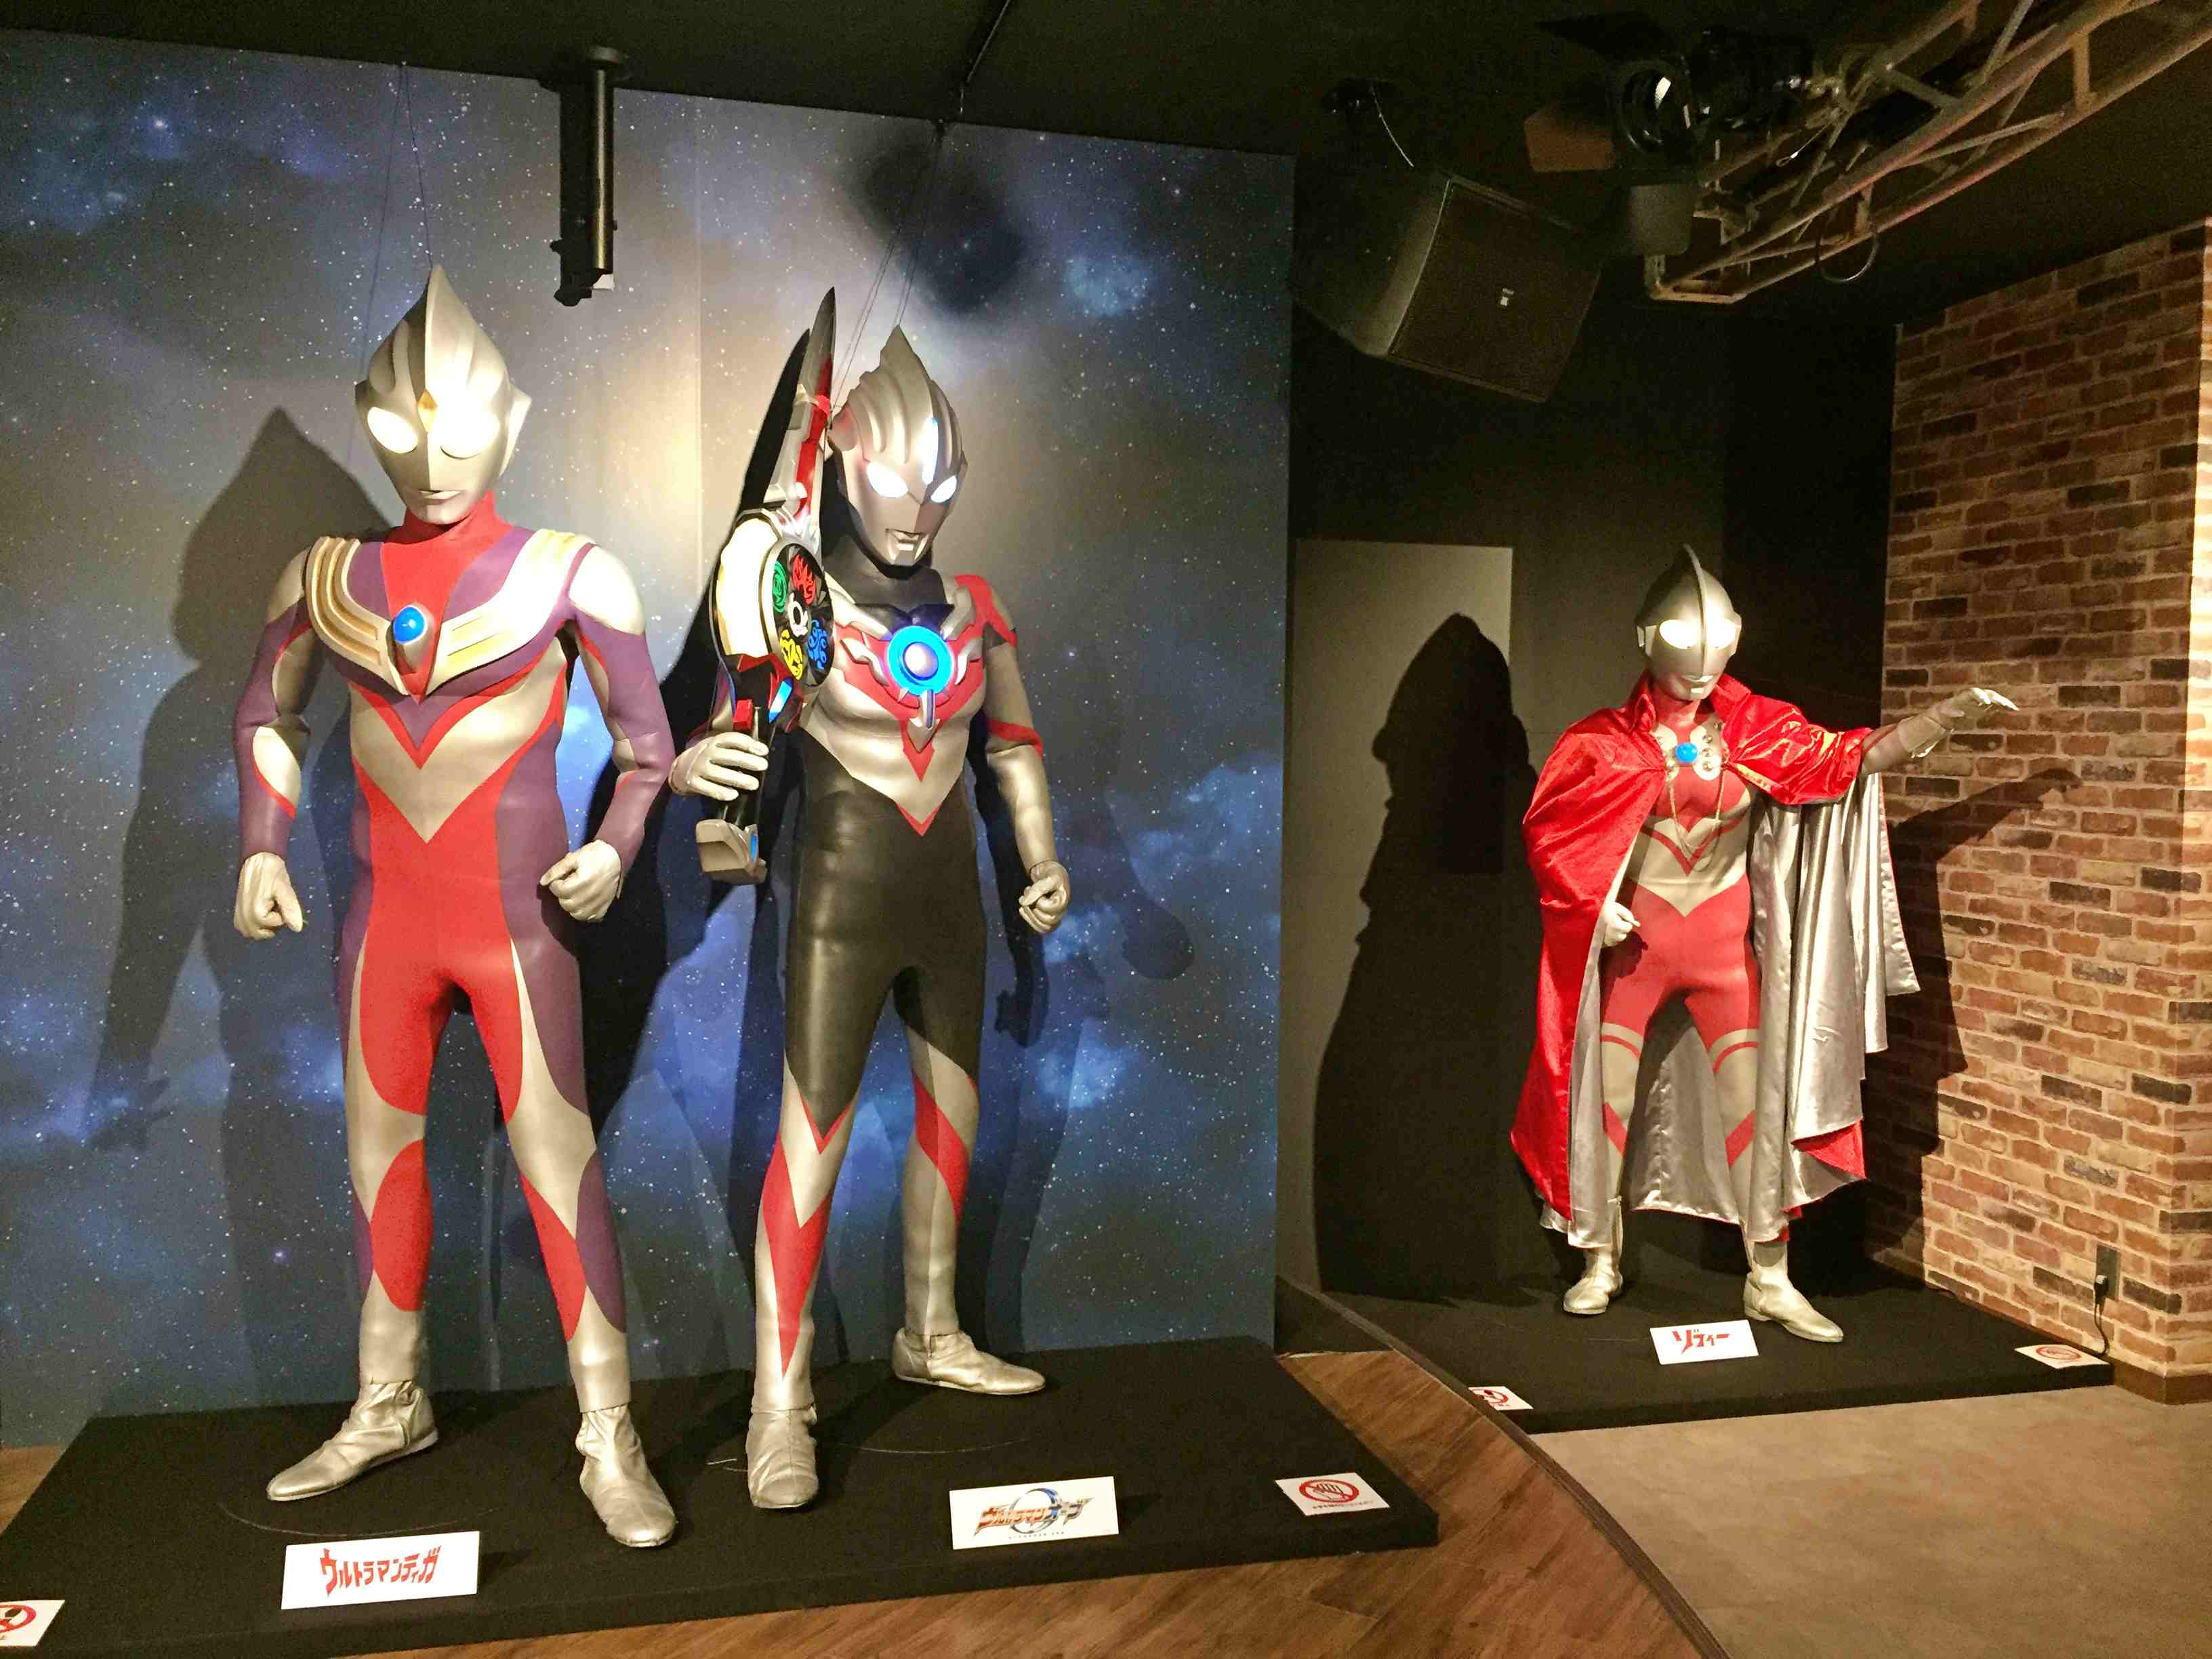 Ultraman Music Cafe 最終日1 27 日 はウルトラマンゼロが登場 イベント詳細 事前予約サイトを公開しました アニon アニオン カフェ バー バンダイナムコアミューズメント 夢 遊び 感動 を